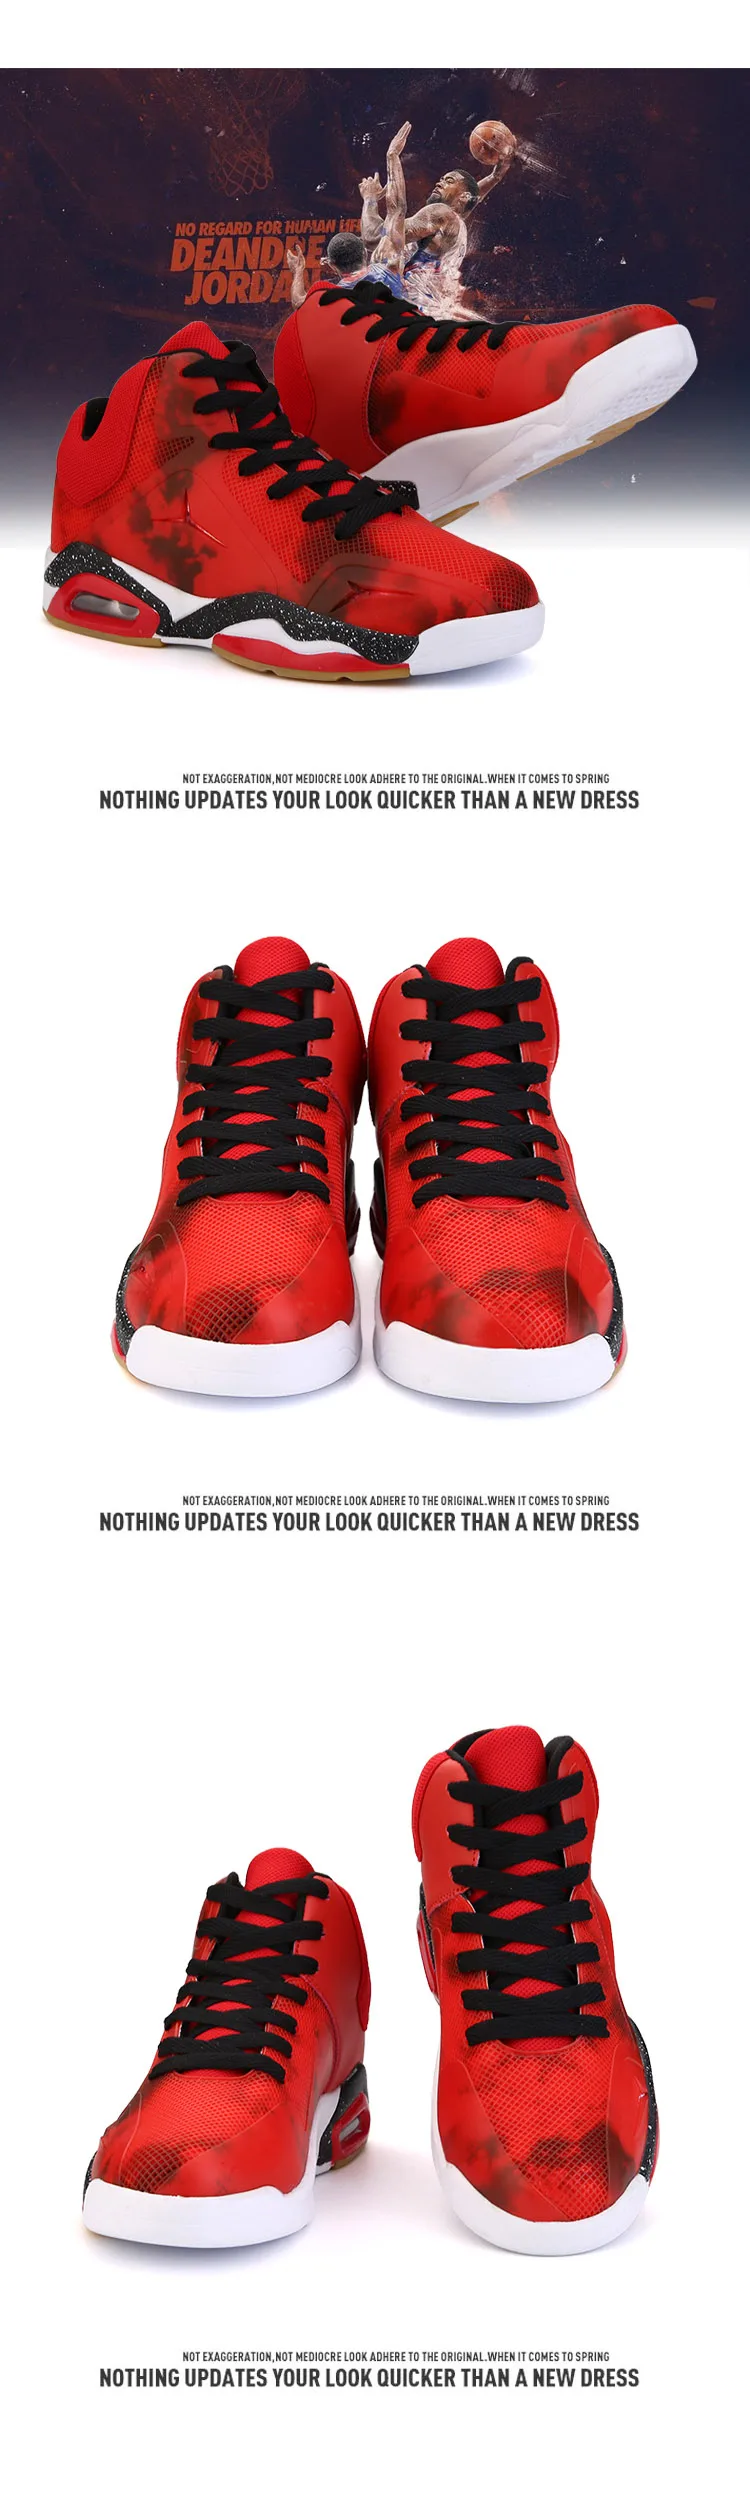 ARSMUNDI Мужская обувь Баскетбольная Спортивная обувь Открытый тапки жесткие для мужчин дышащие массажные непромокаемые кружево до летняя